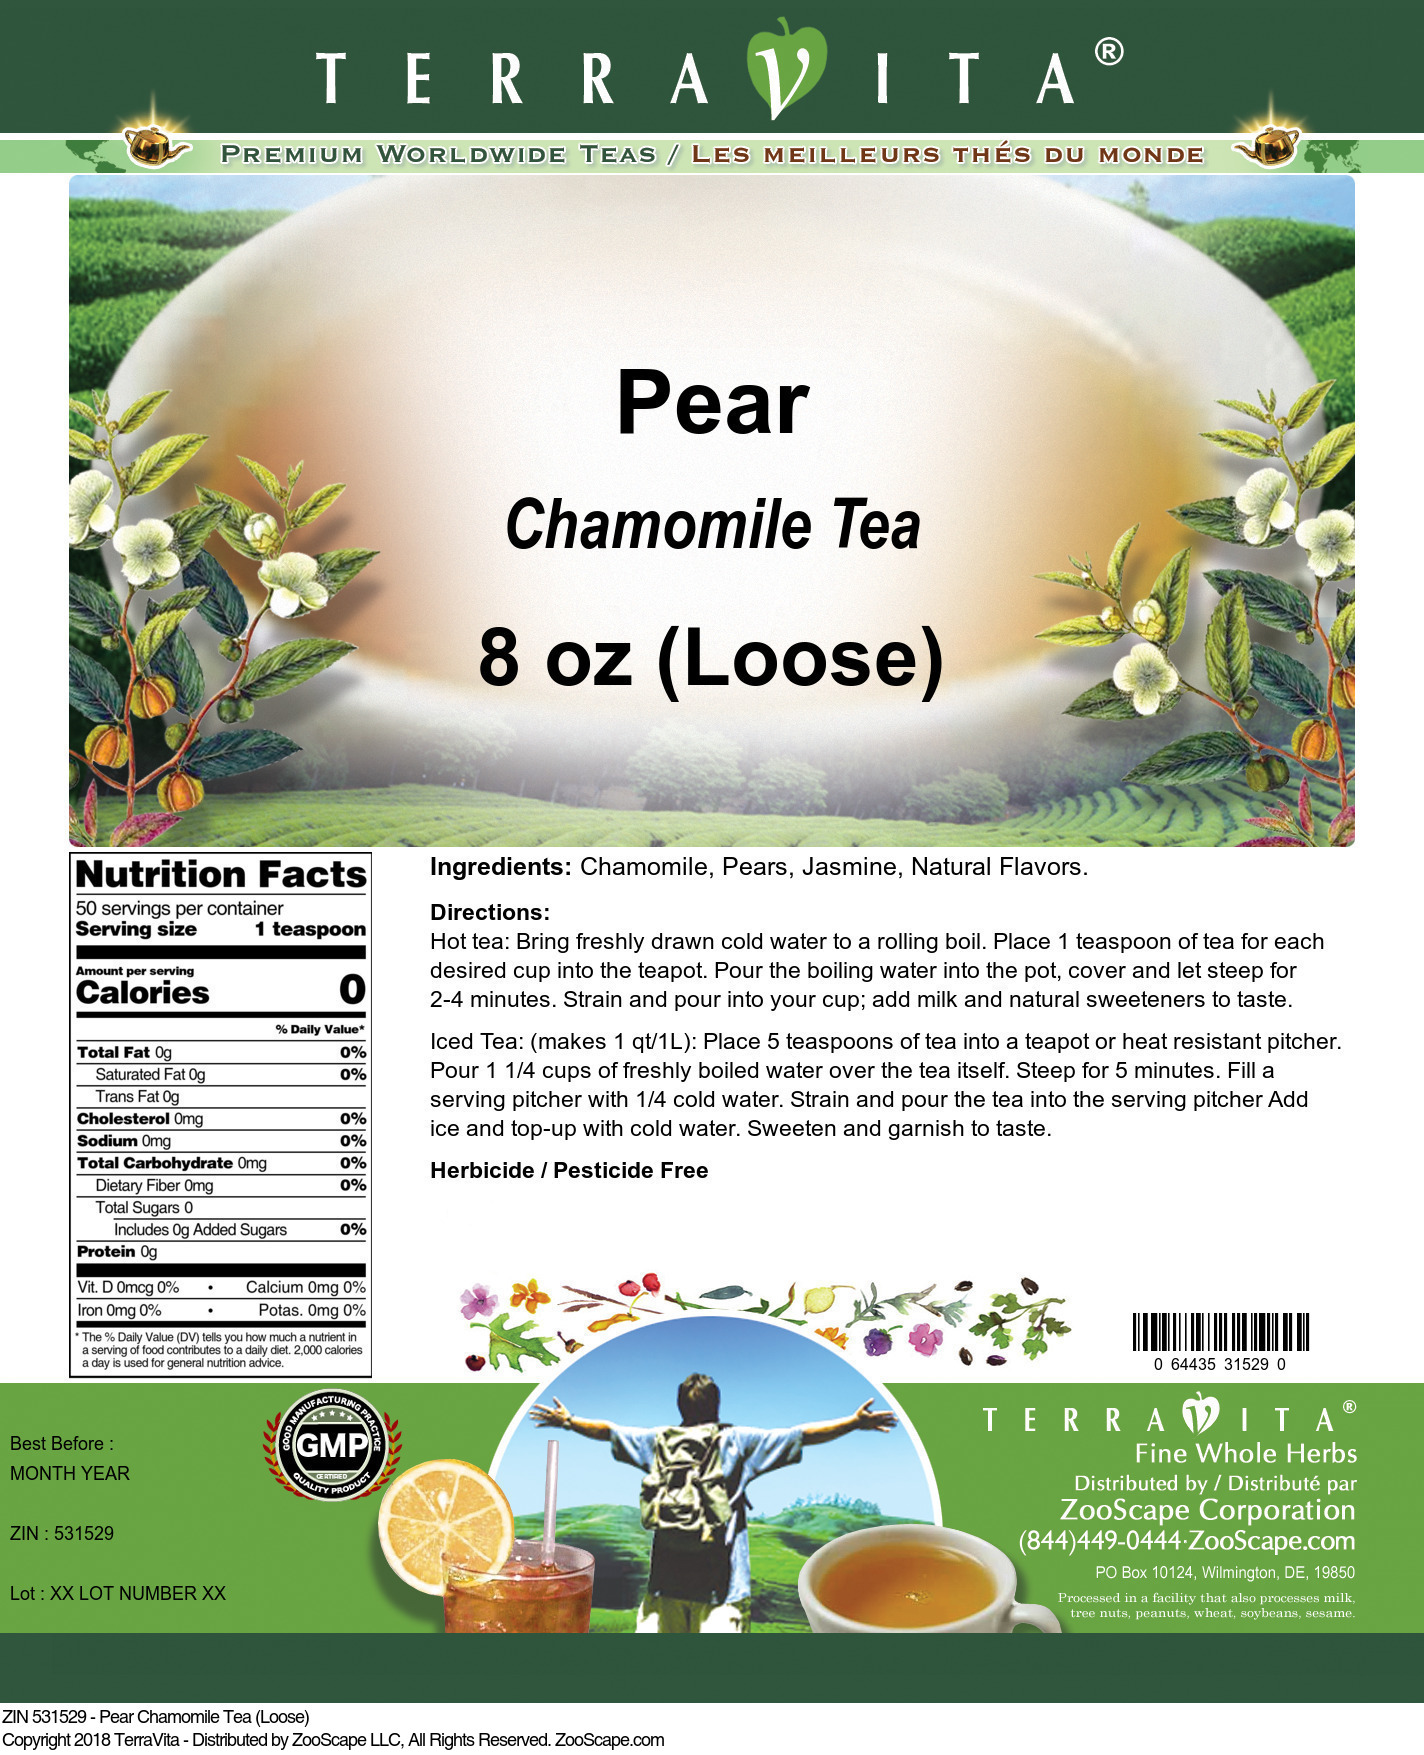 Pear Chamomile Tea (Loose) - Label